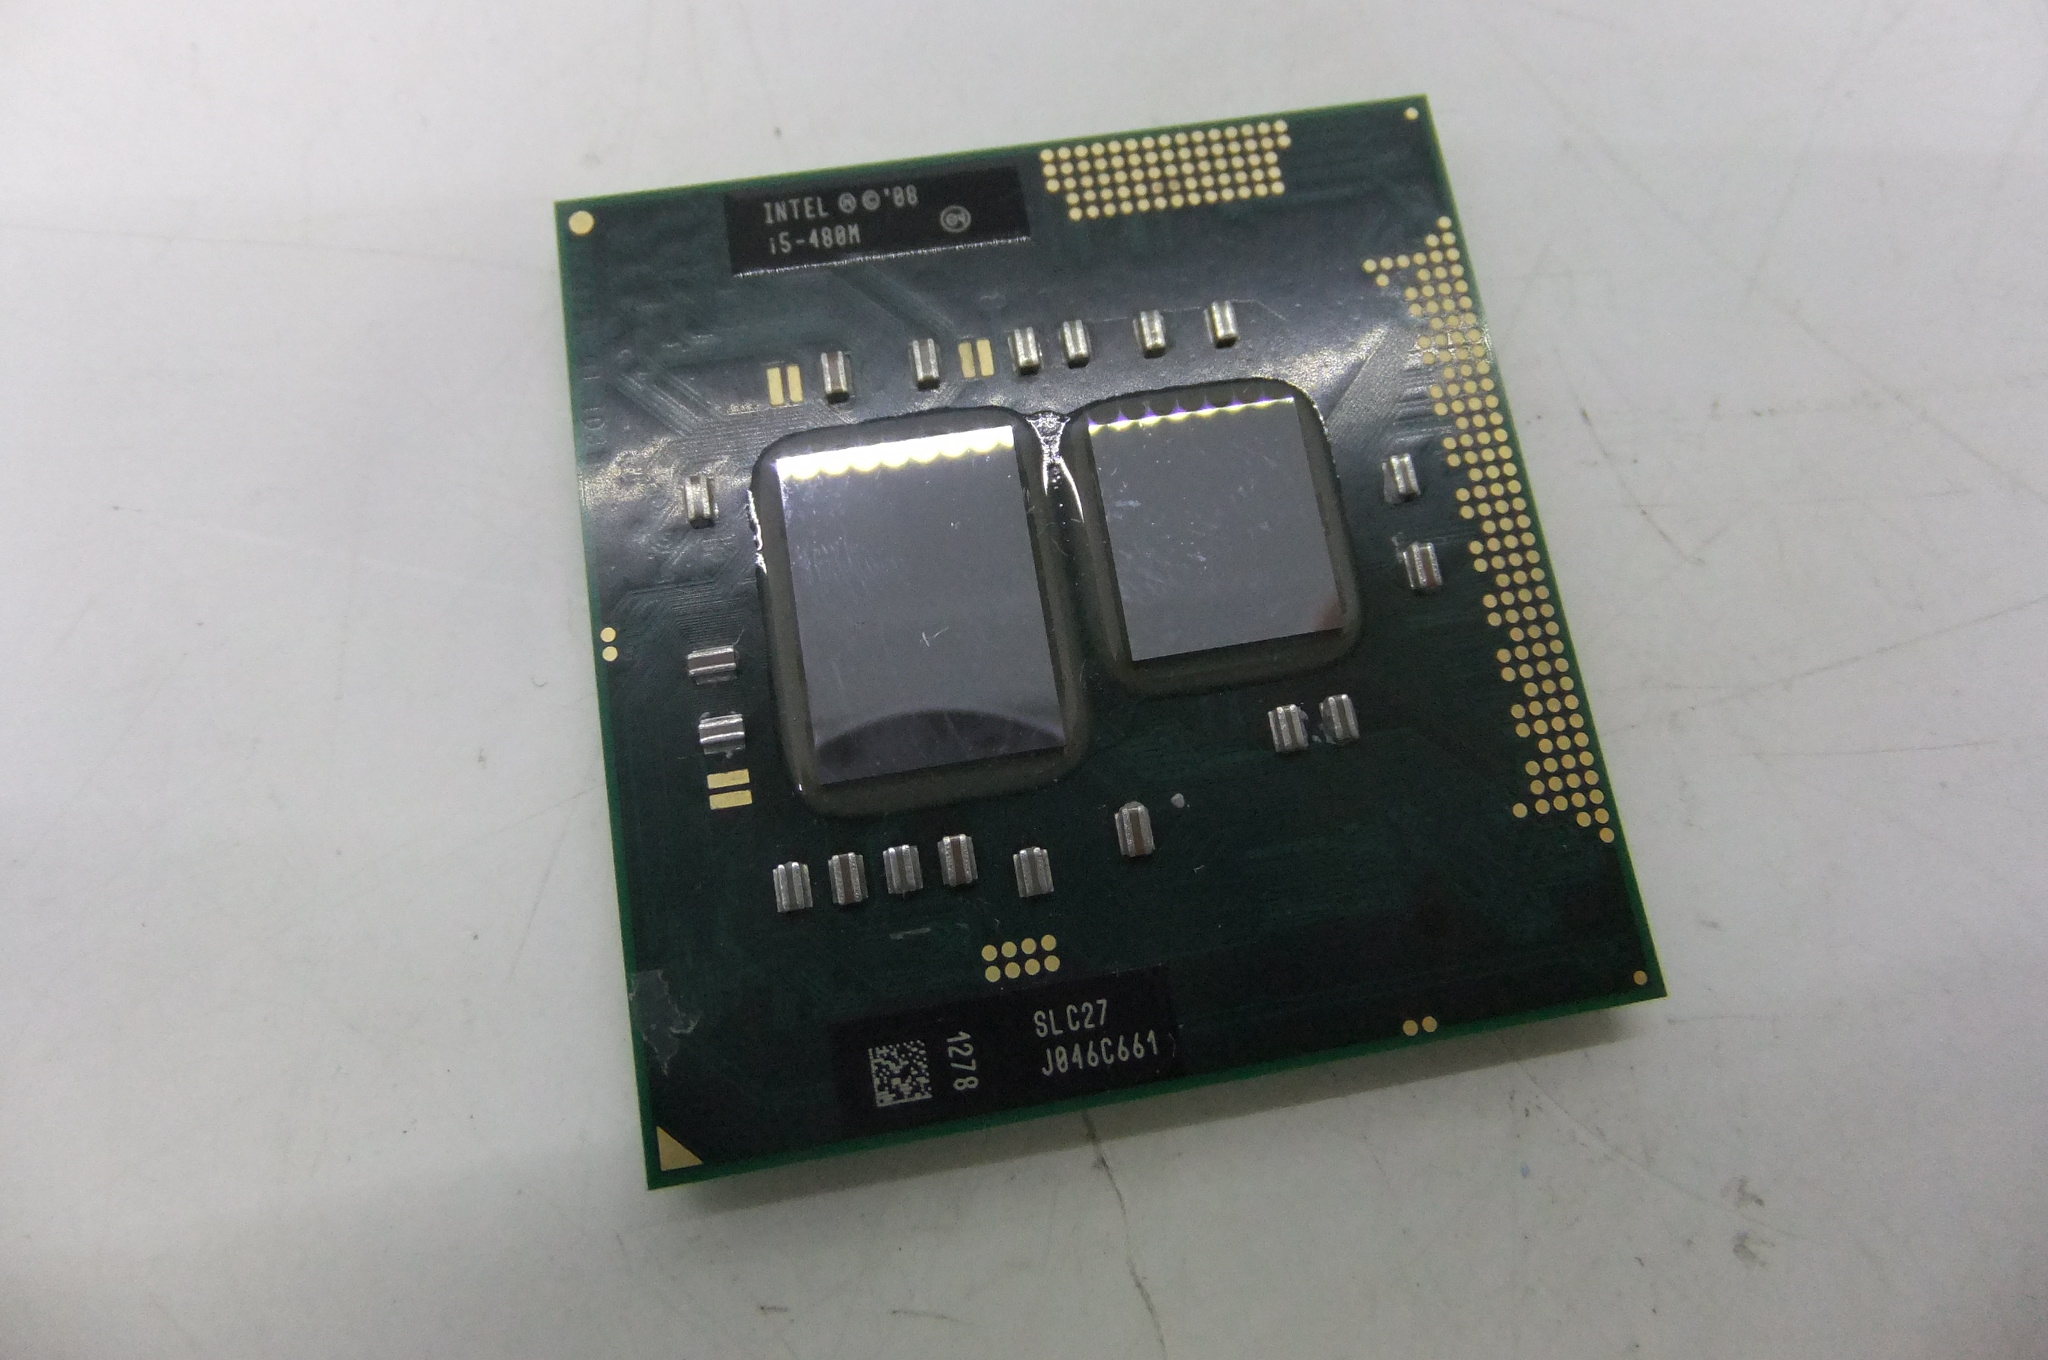 I5 480. Процессор i5 480m. I5-480m slc27. AMD Turion II m540. B800 процессор.